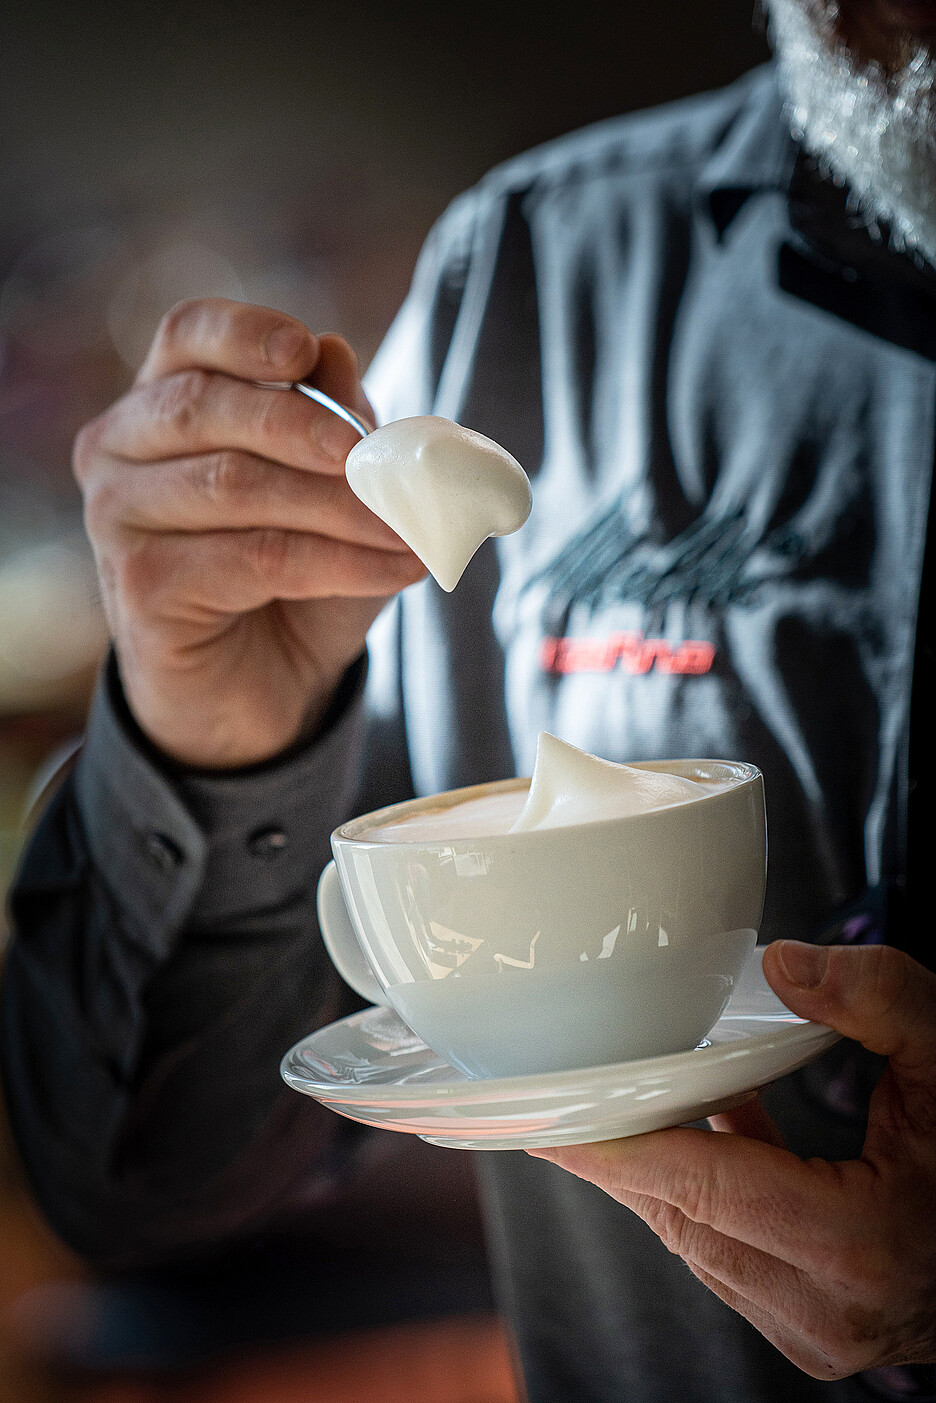 Le dispositif TopFoam permet de garantir la qualité éprouvée de la mousse de lait de Cafina qui se maintient à la perfection également sur la cuiller, se distingue par une certaine structure et conserve l’entier du goût d’origine du lait.